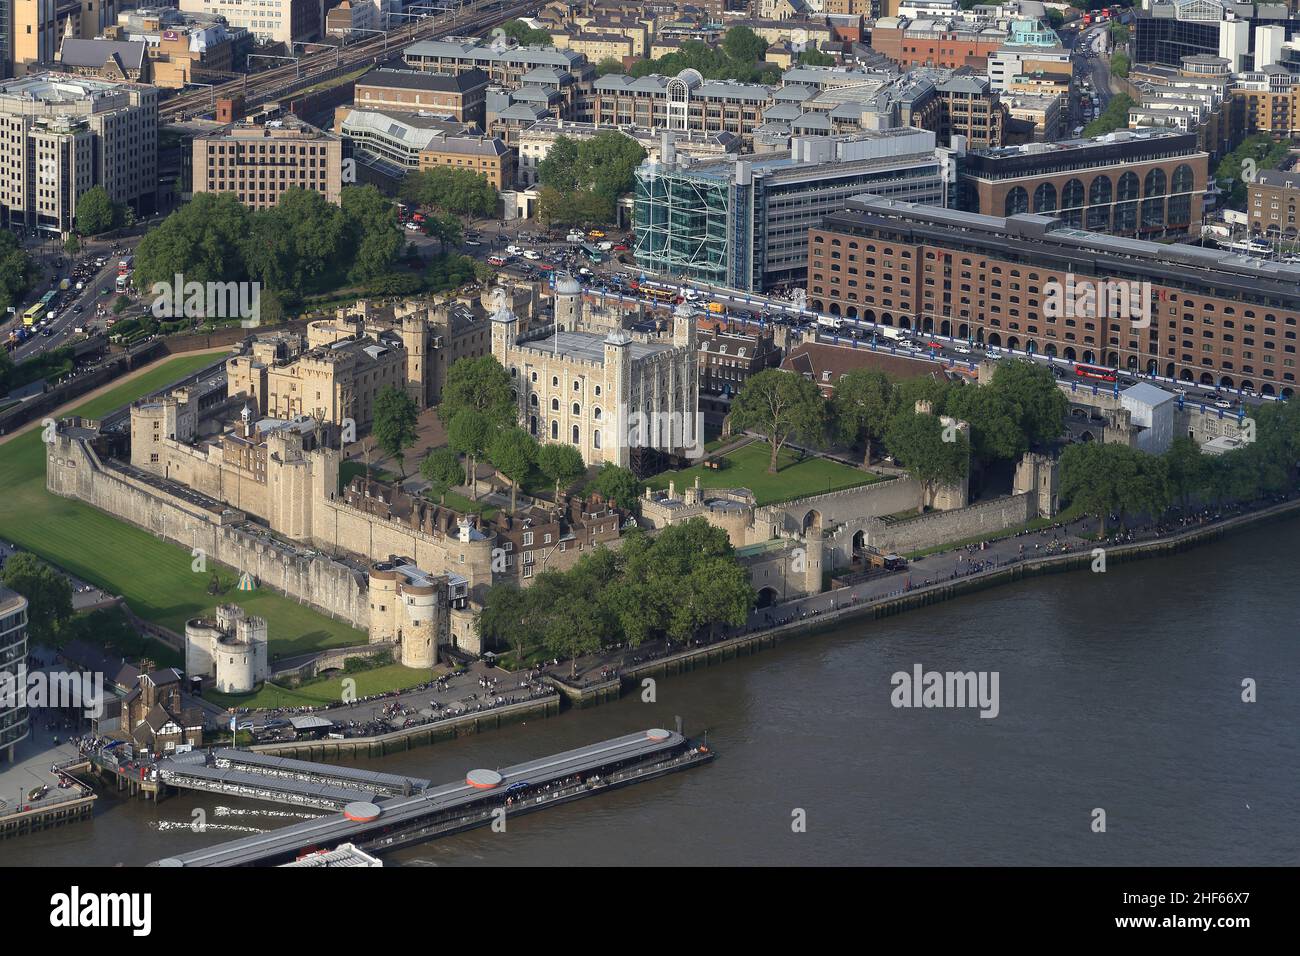 LONDON, GROSSBRITANNIEN - 16. MAI 2014: Es ist eine Luftaufnahme des London Tower. Stockfoto